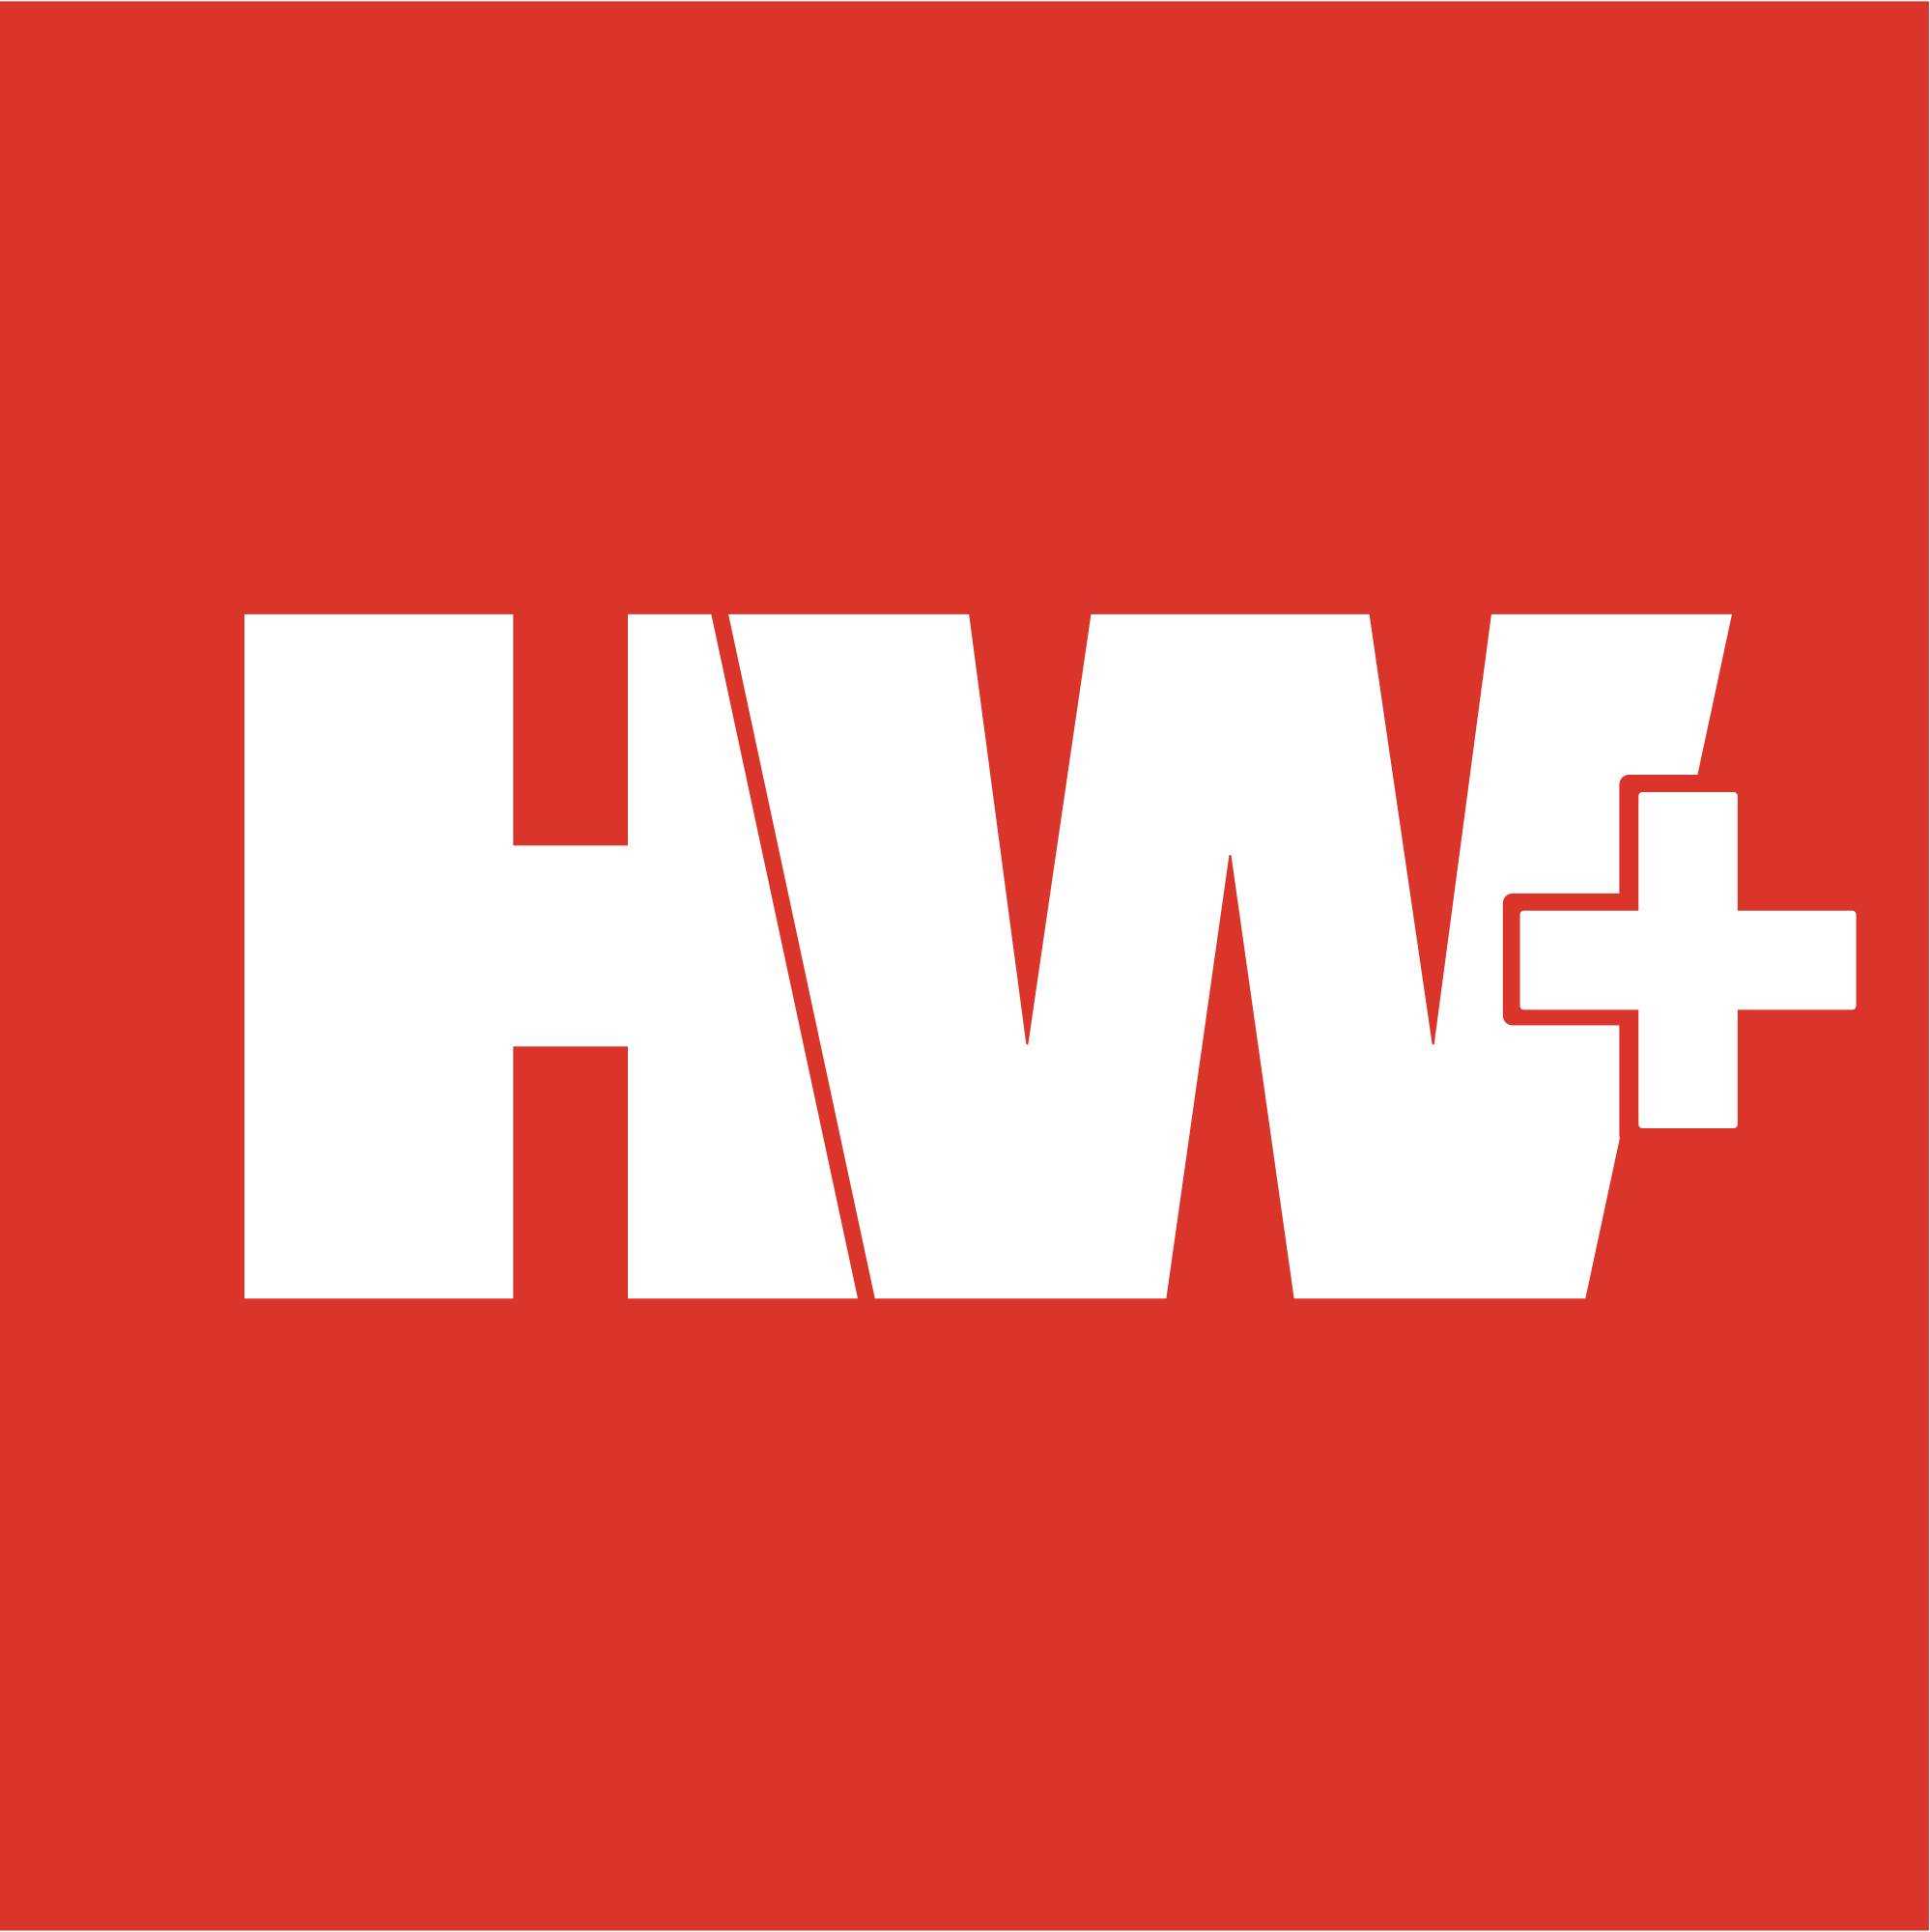 HW-Logo